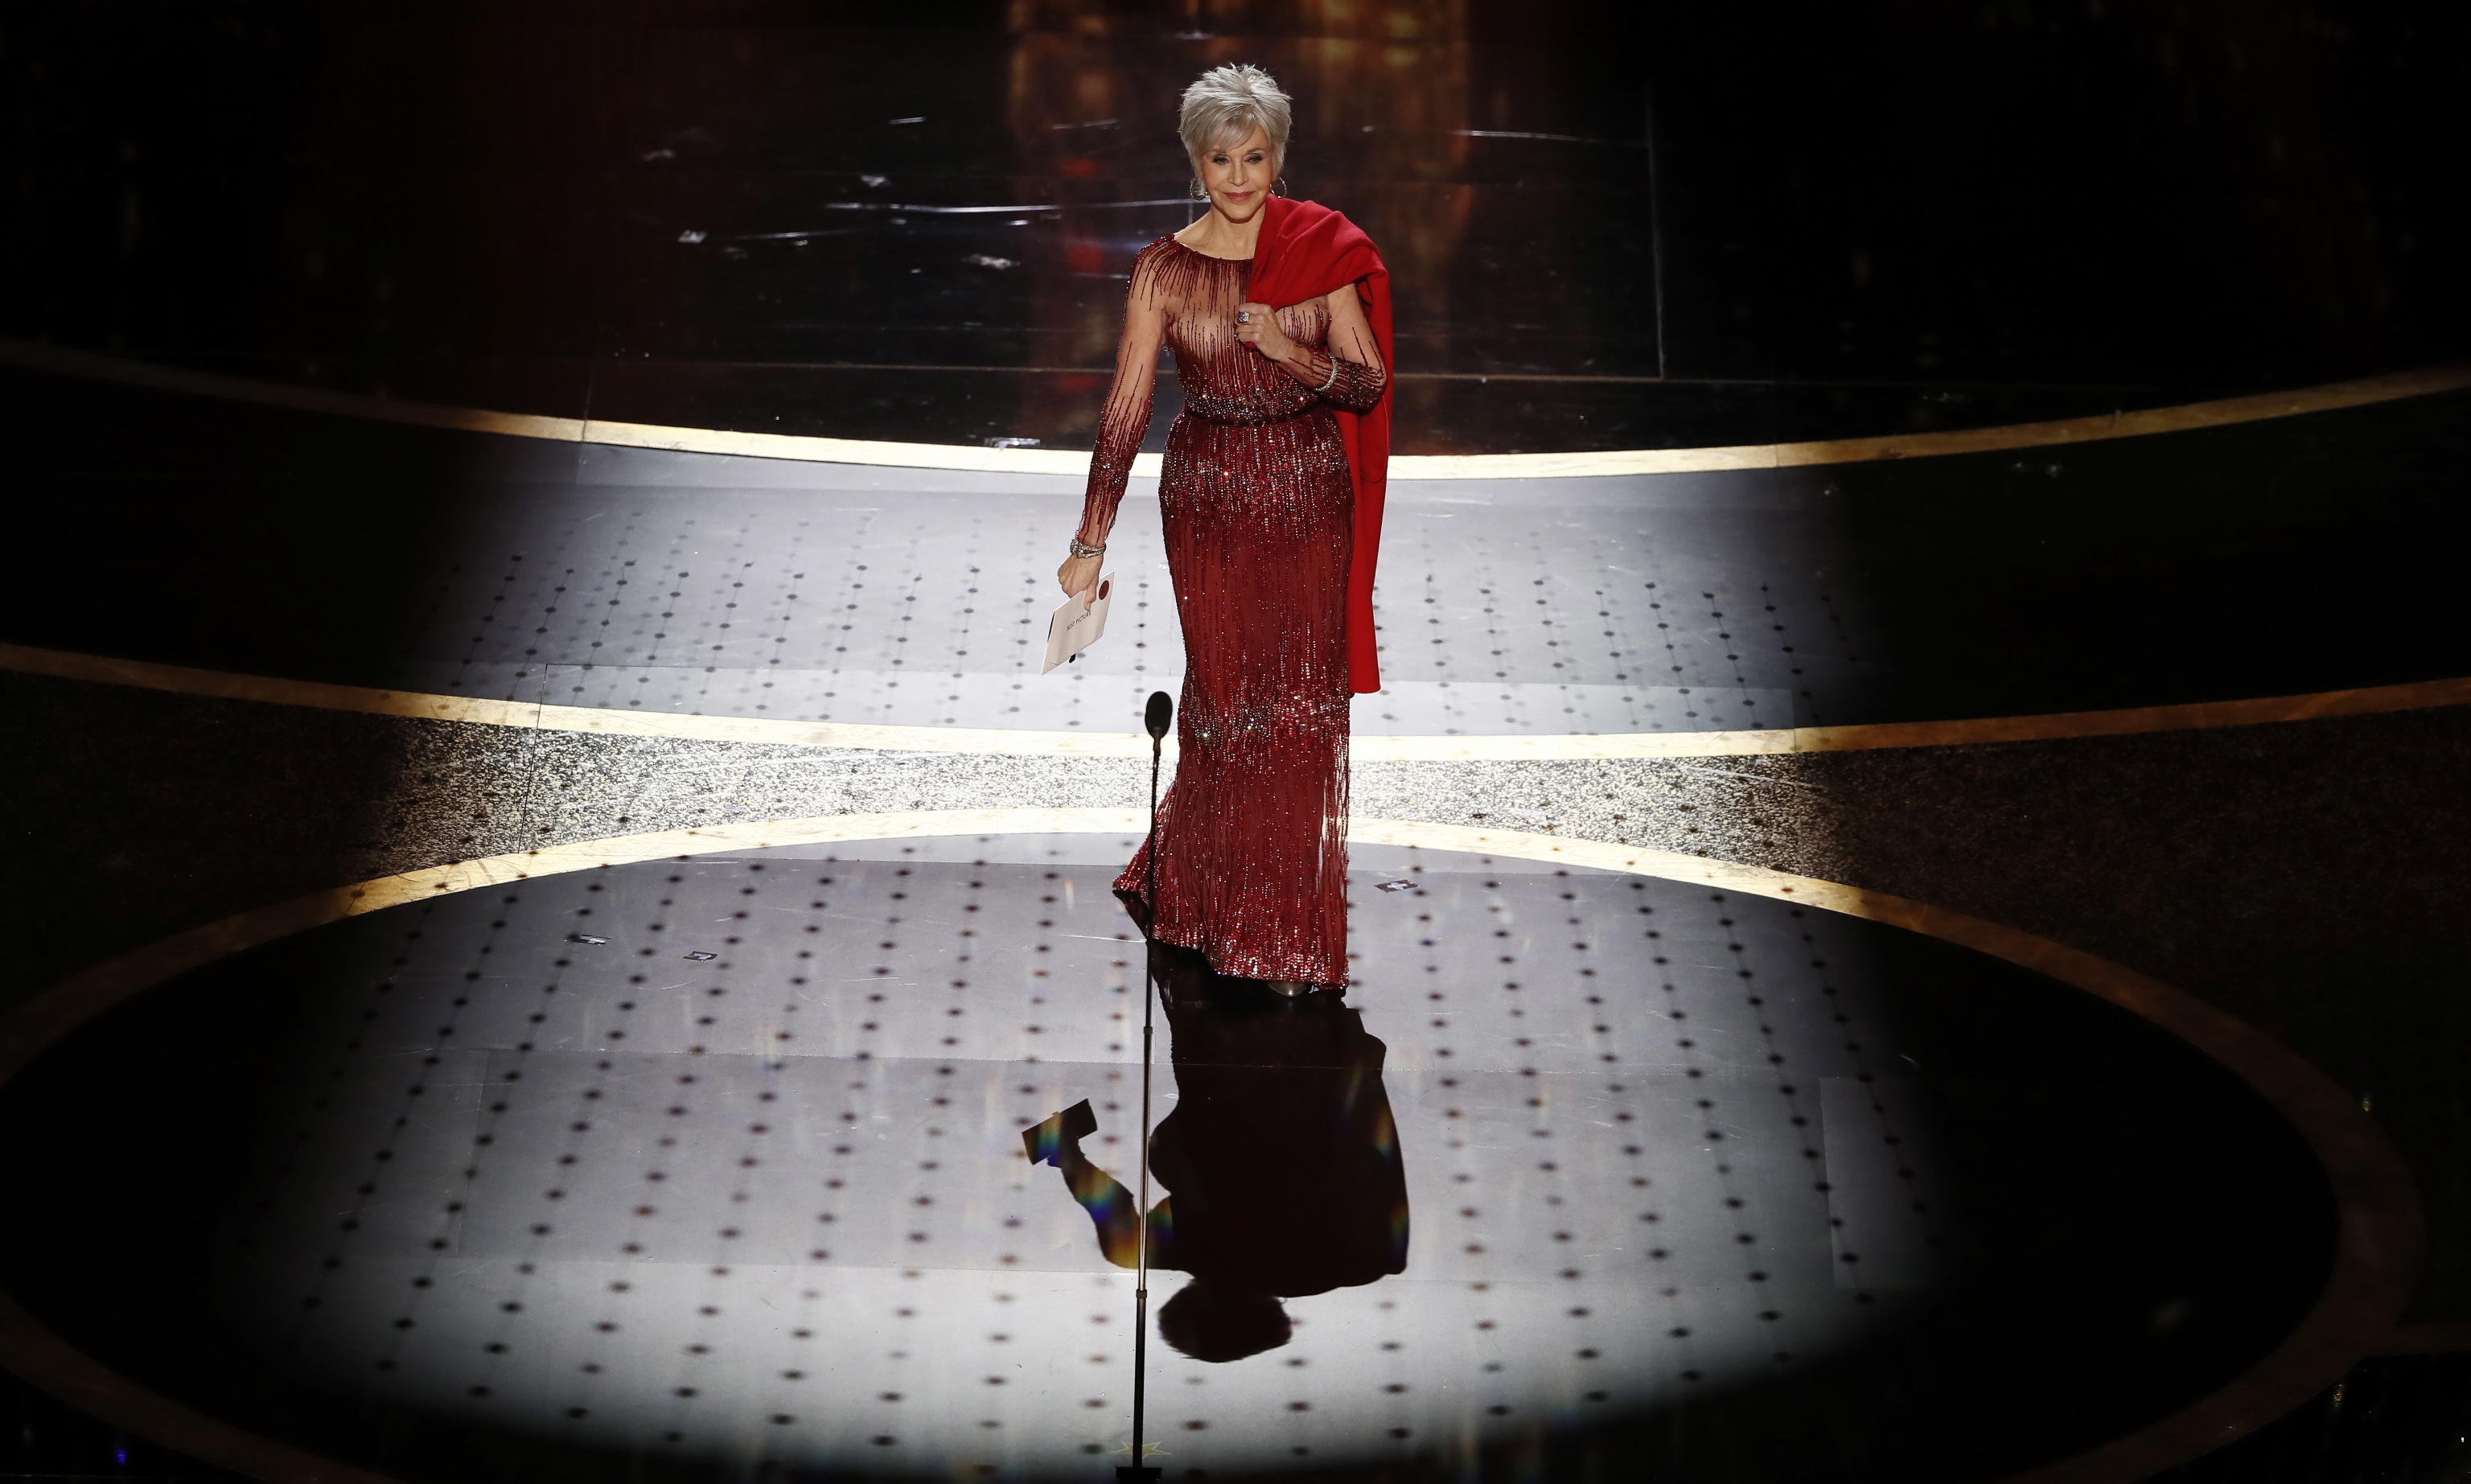 L'attrice Jane Fonda arriva sul palco degli Oscar per introdurre il premio al miglior film dell'anno